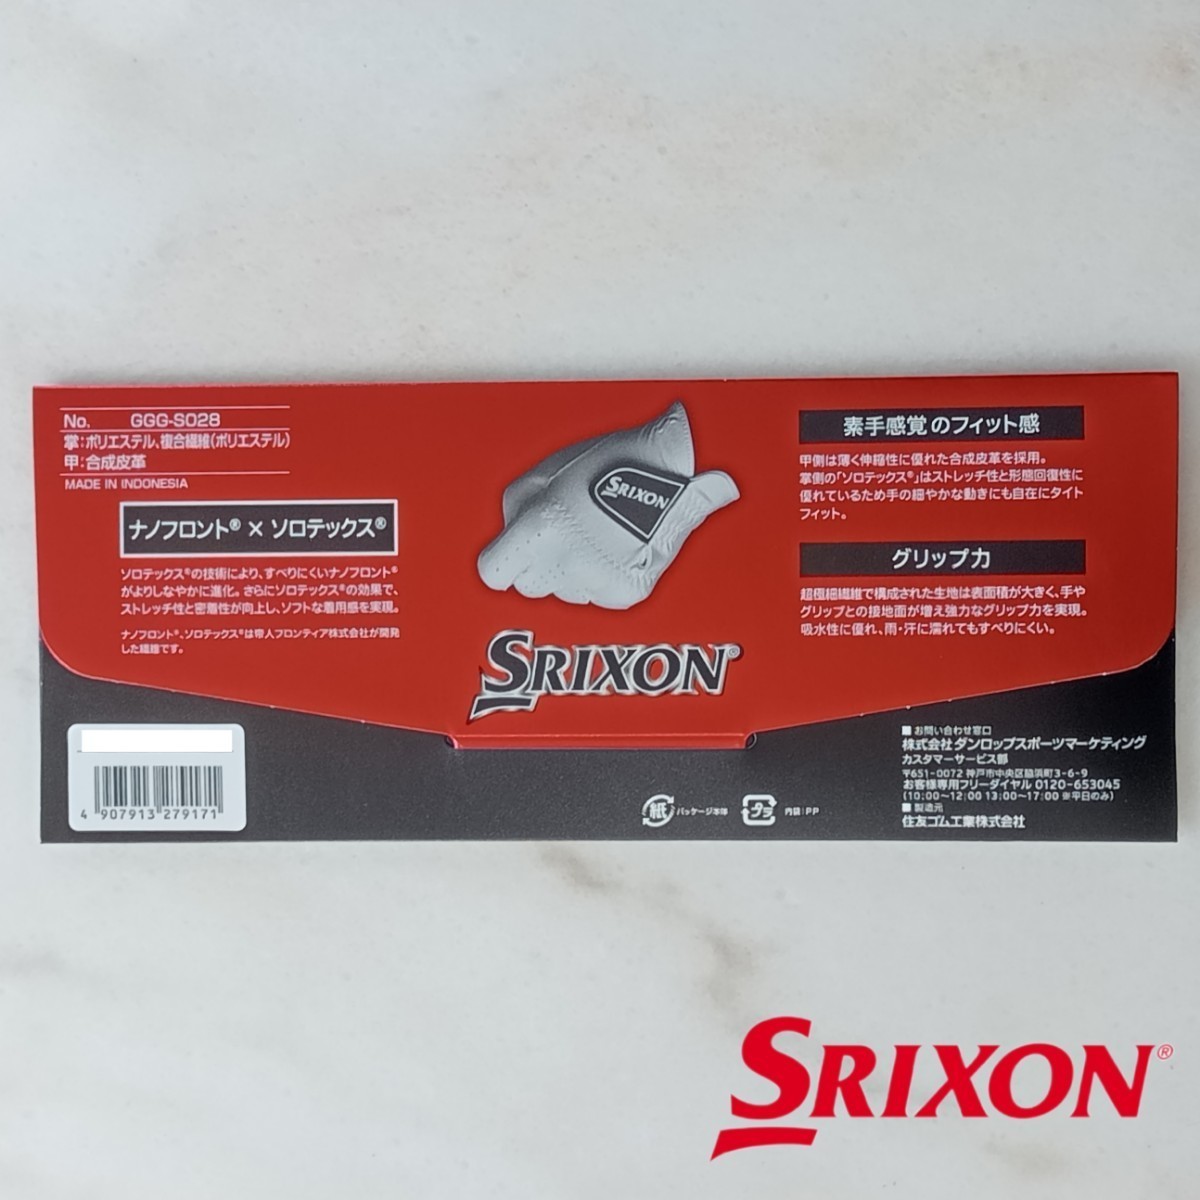 スリクソン 24cm 白 2枚セット GGG-S028 ダンロップ ゴルフグローブ 新品未使用品 ゴルフ用品 SRIXON PRO SERIES 薄手 ホワイト グローブ_画像6